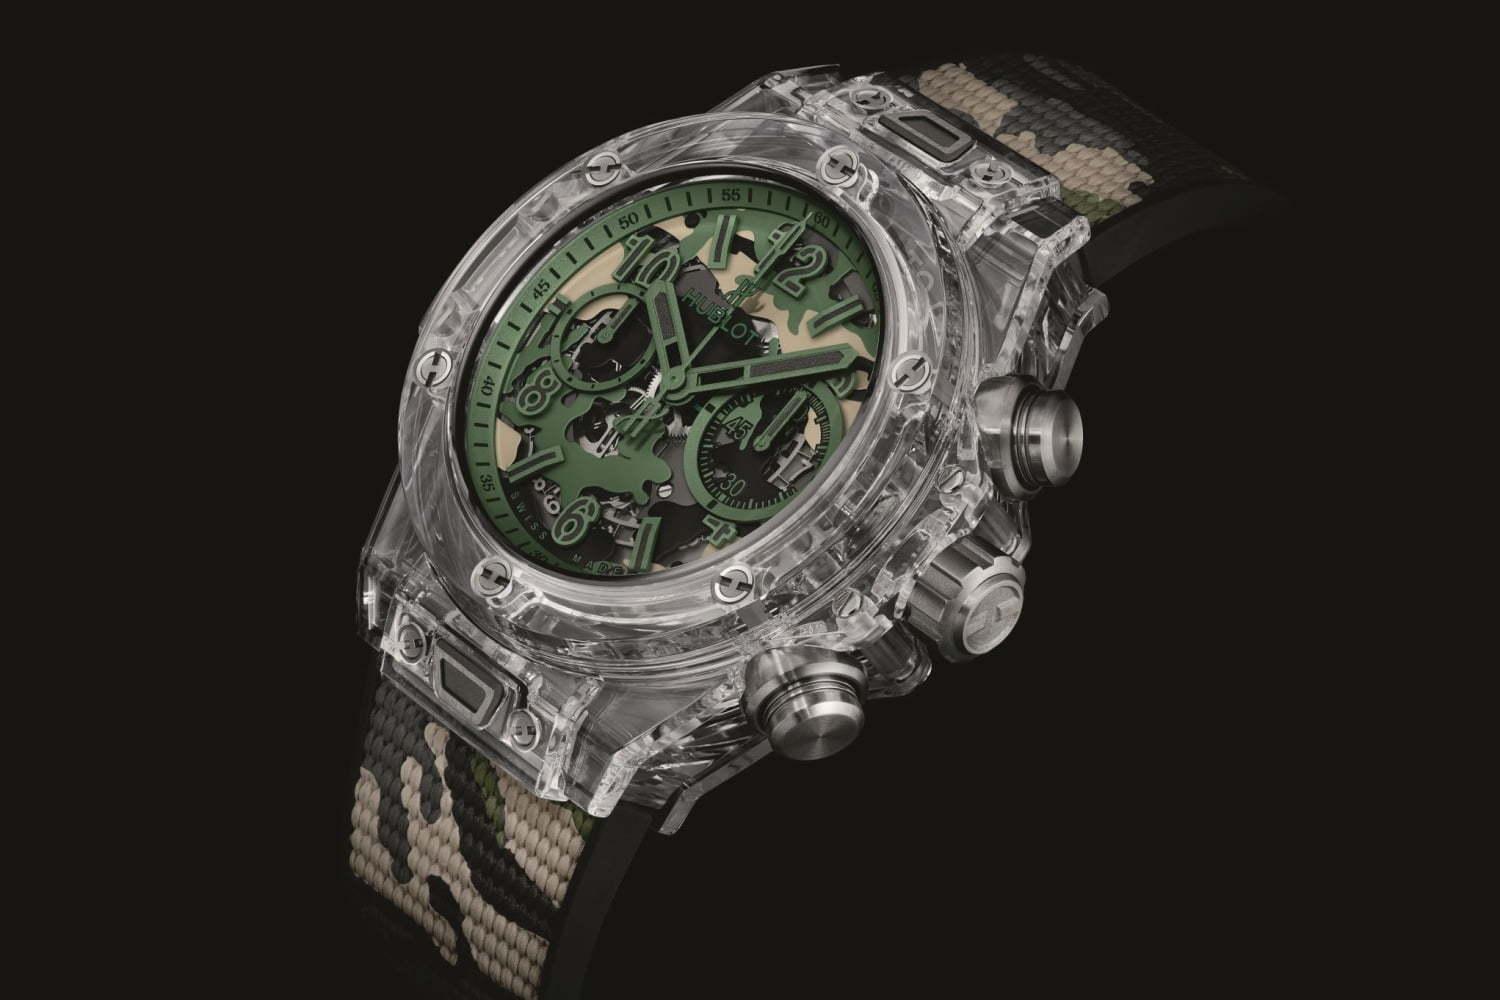 ウブロの日本限定腕時計「ビッグ・バン ウニコ サファイア カモフラージュ」スケルトン×迷彩柄ダイアル 